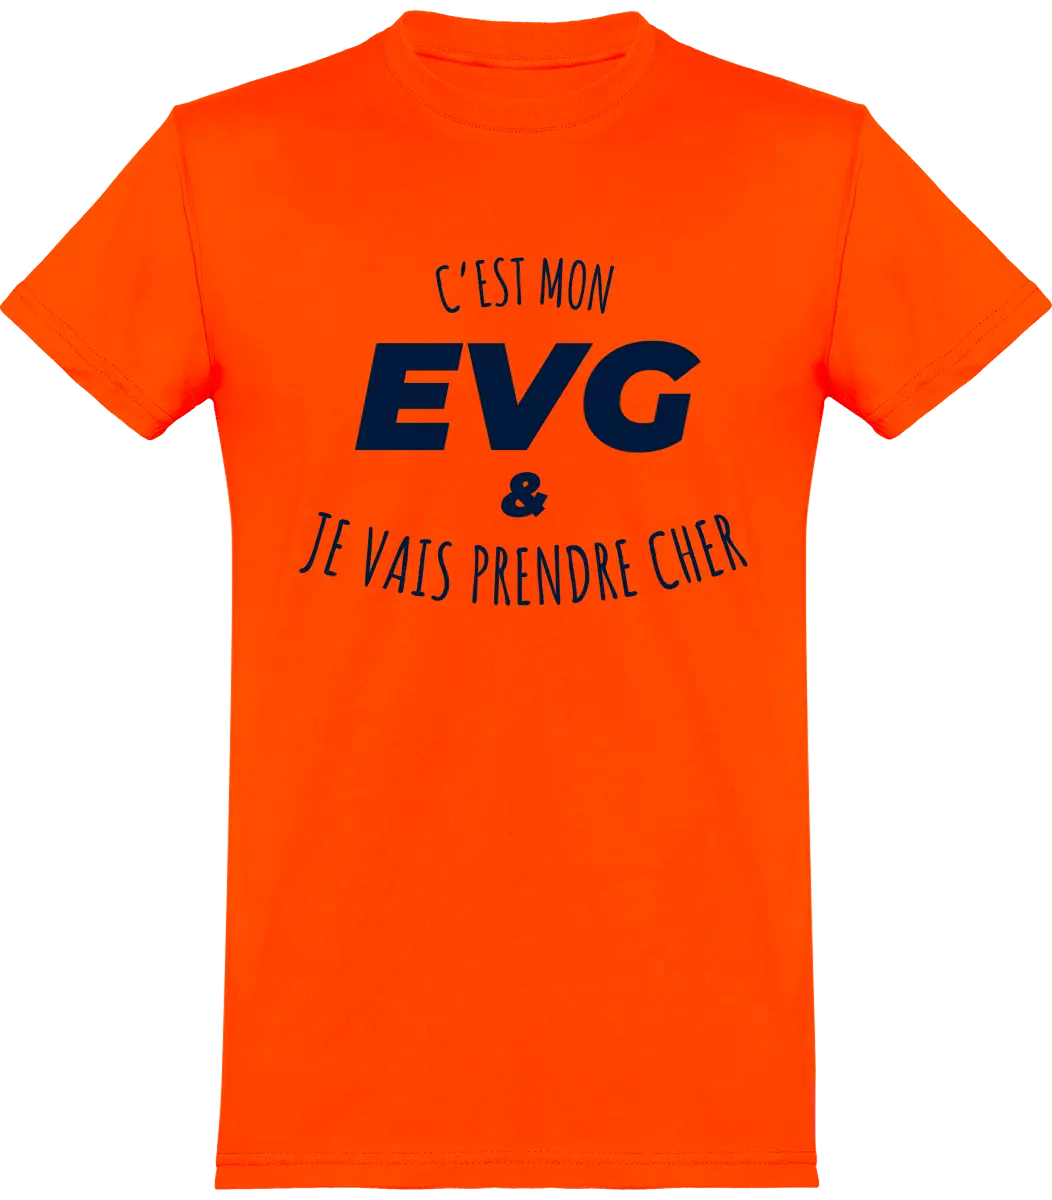 T-shirt EVG "C'est mon evg et je vais prendre cher" | Mixte - French Humour